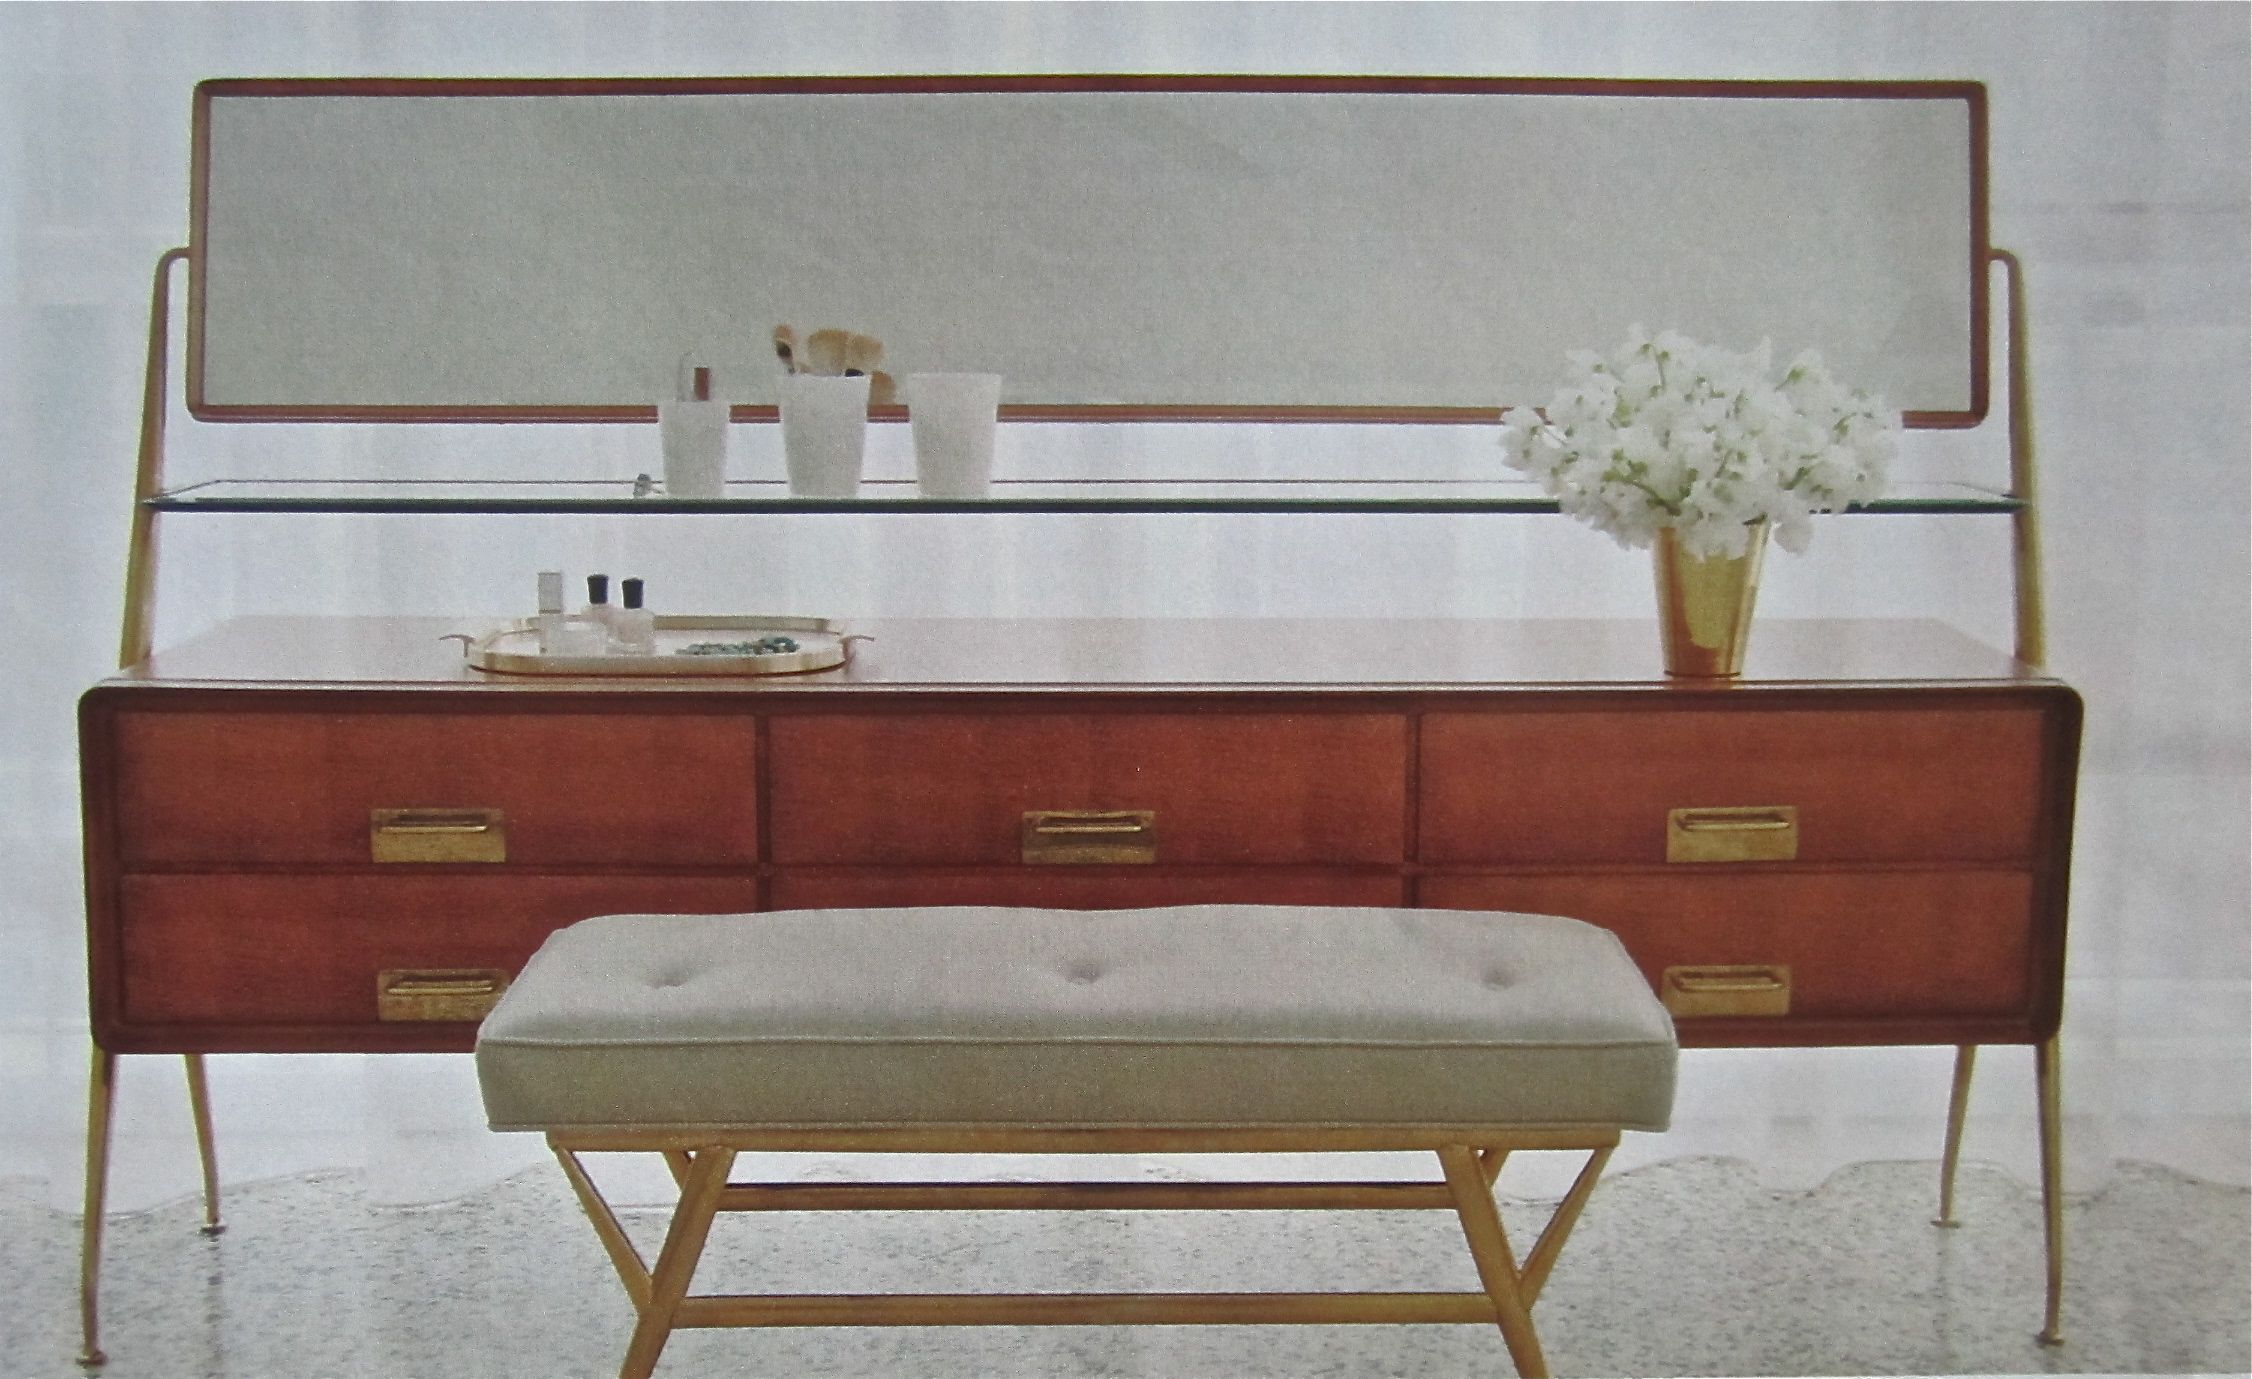 ¿Cómo decorar tu hogar con muebles de los años 60? - Guía completa